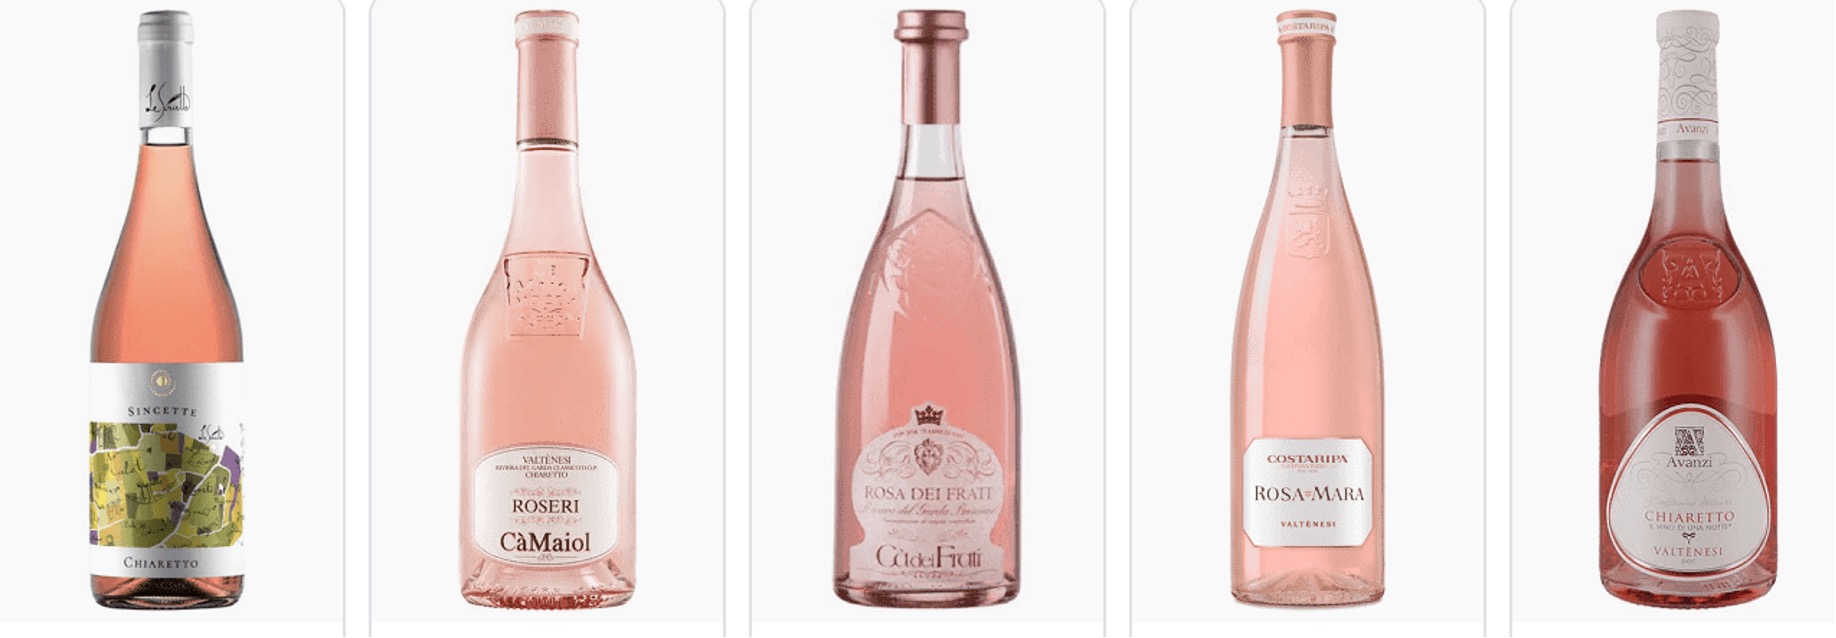 Valtenesi bottles of rosato - Lombardia